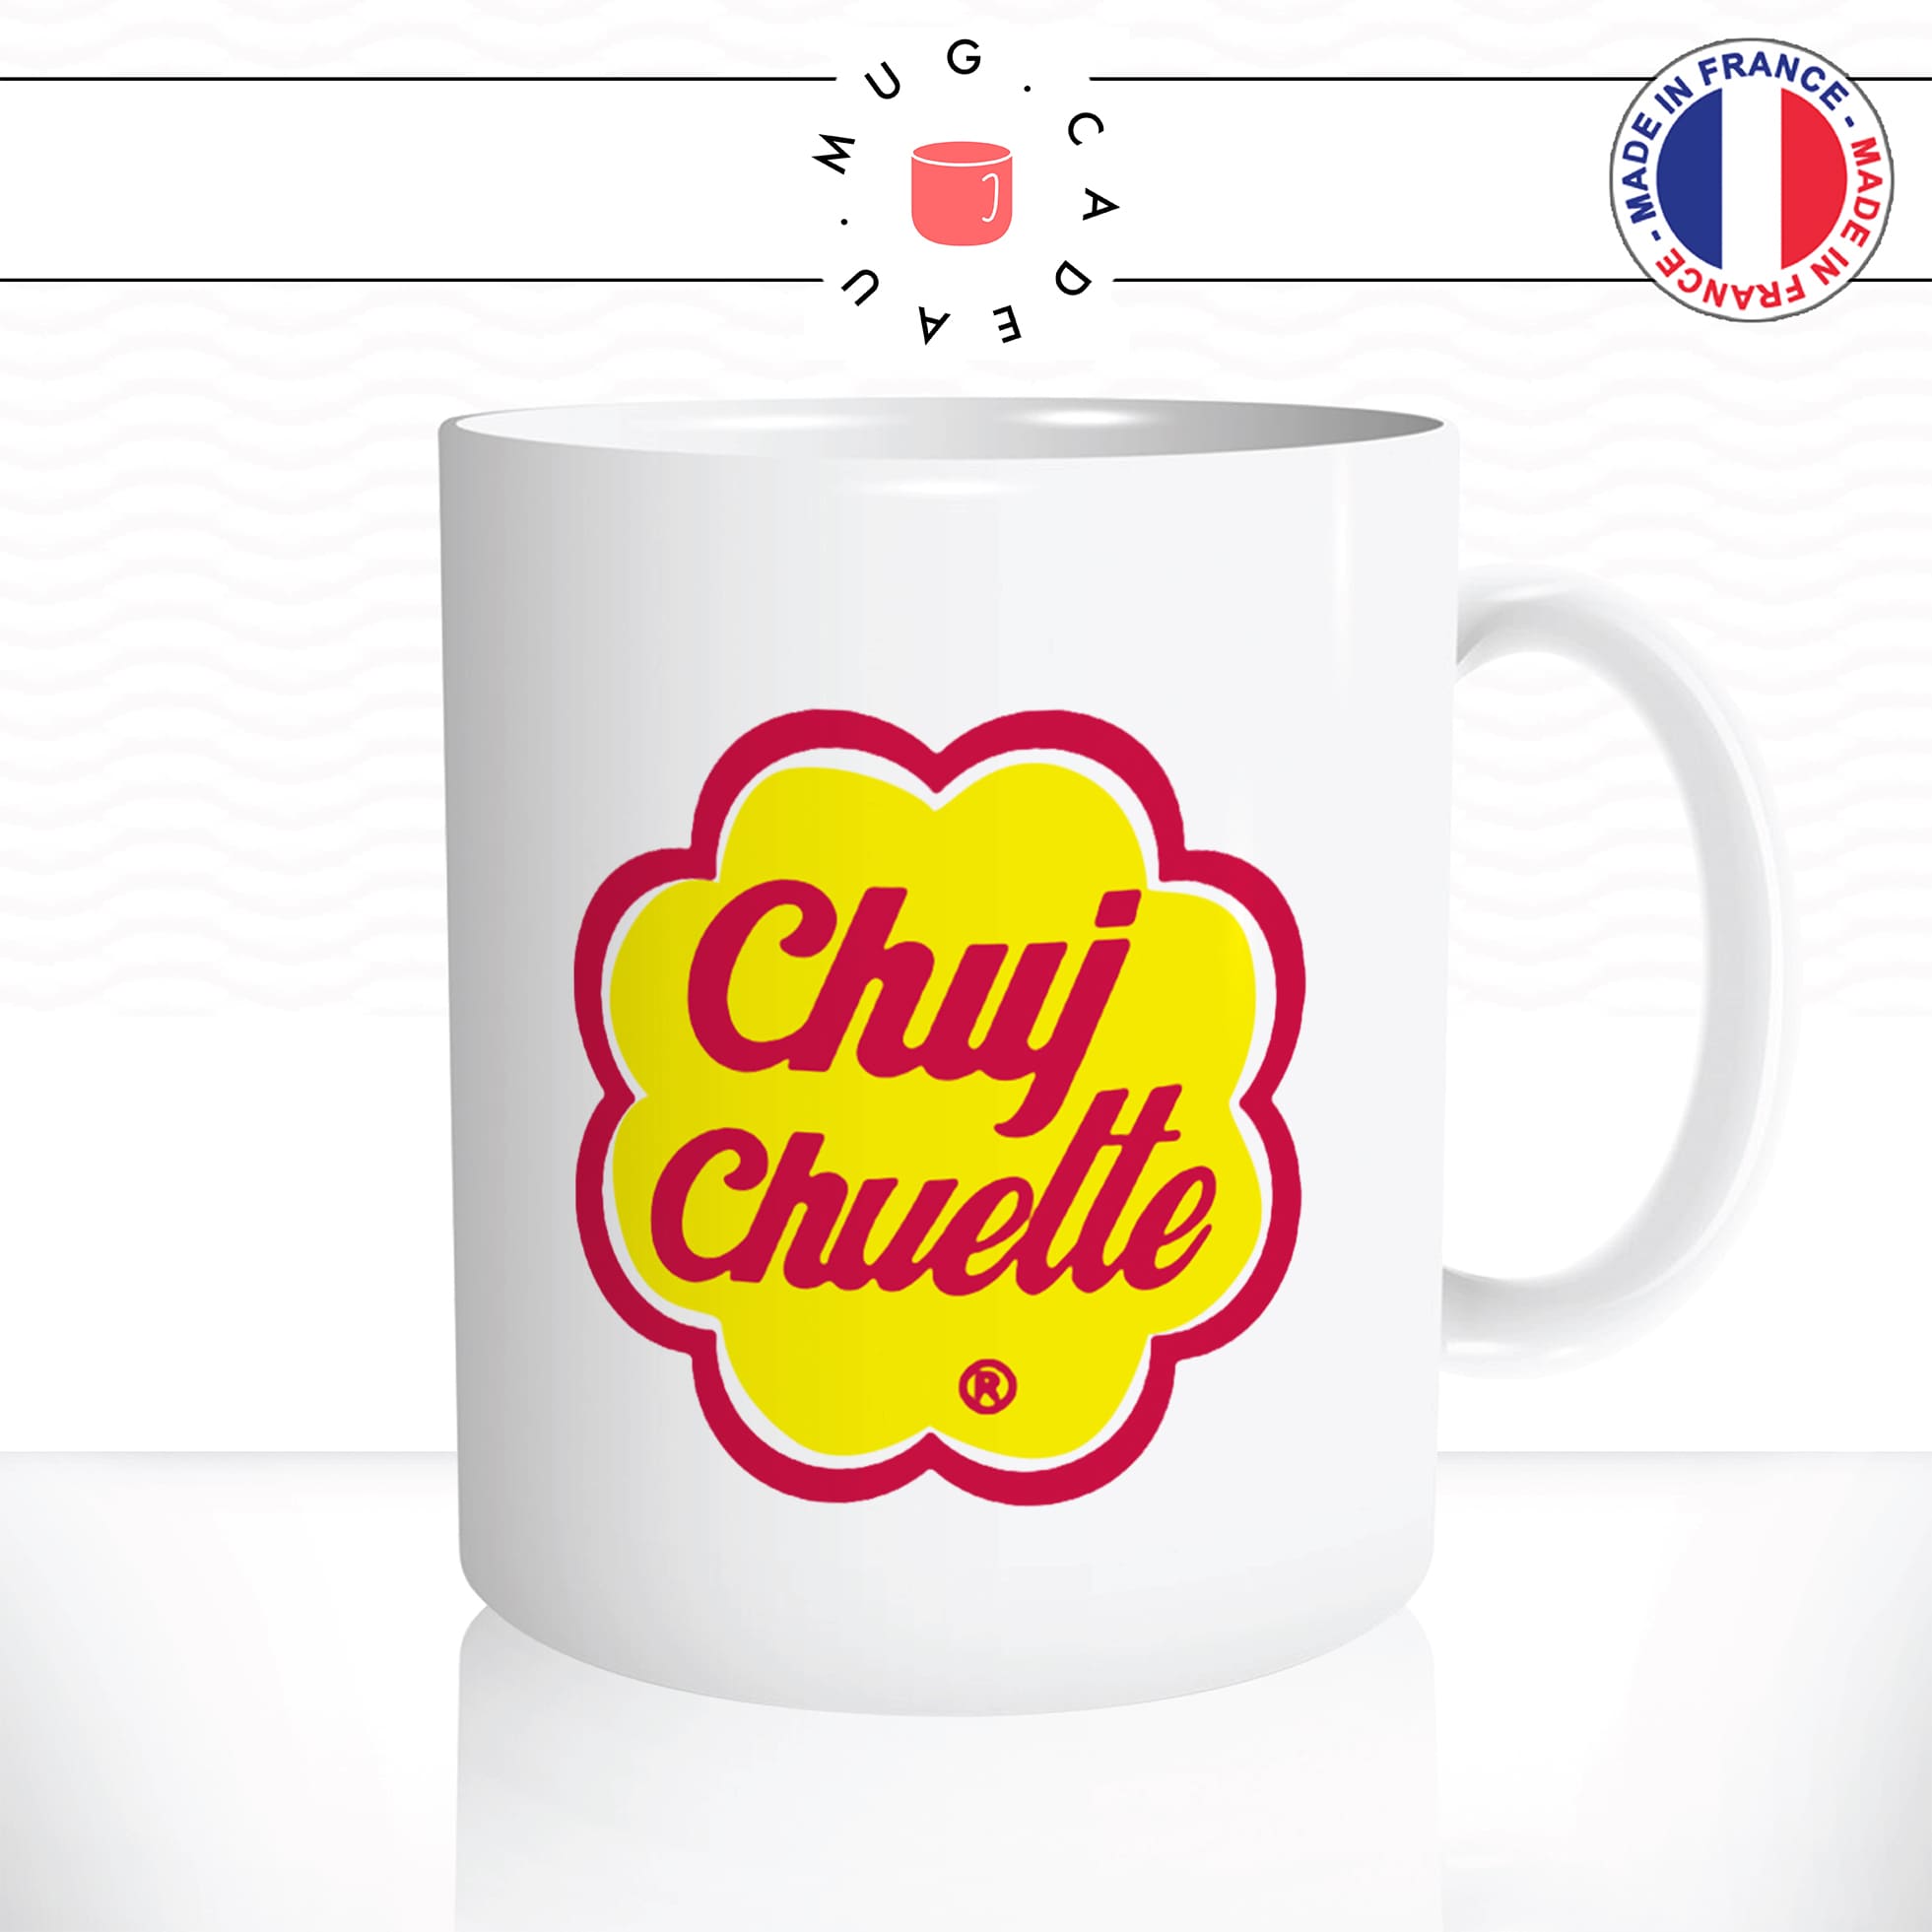 mug-tasse-blanc-unique-chui-chouette-sucette-bonbon-chuppa-homme-femme-parodie-humour-fun-cool-idée-cadeau-original-personnalisé2